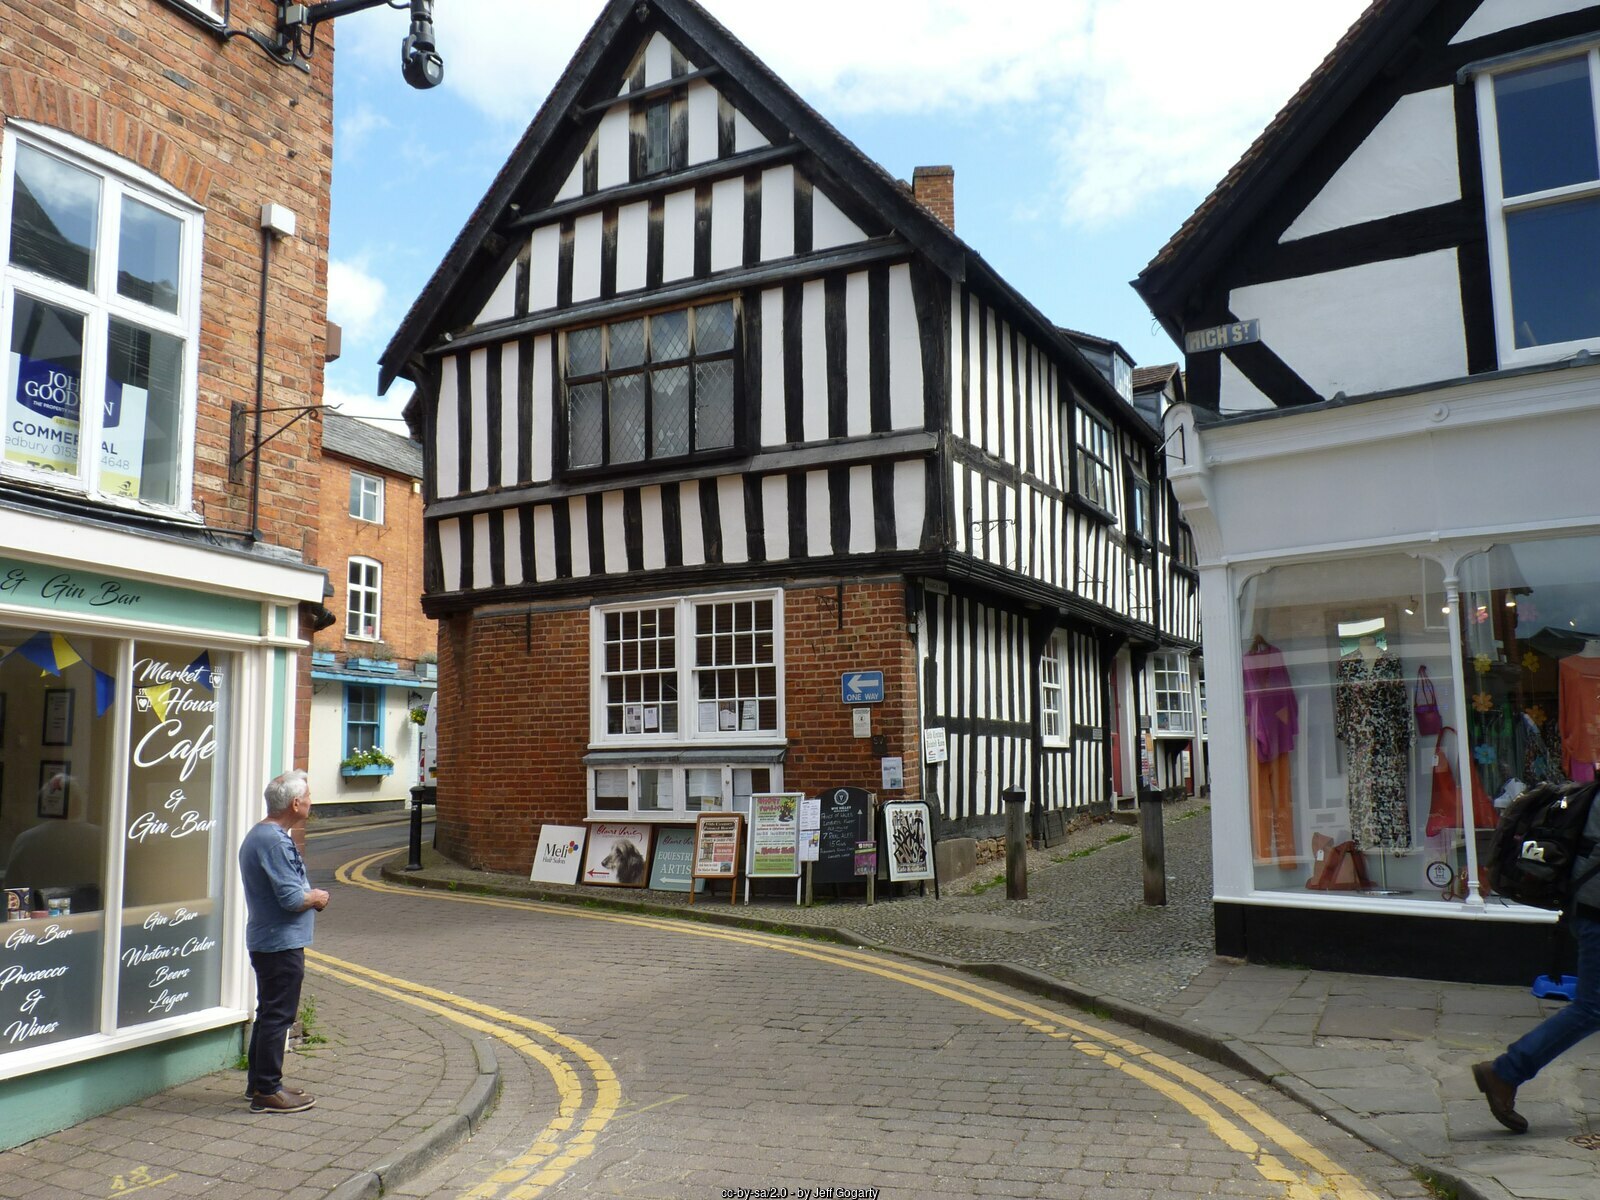 Church lane in Ledbury